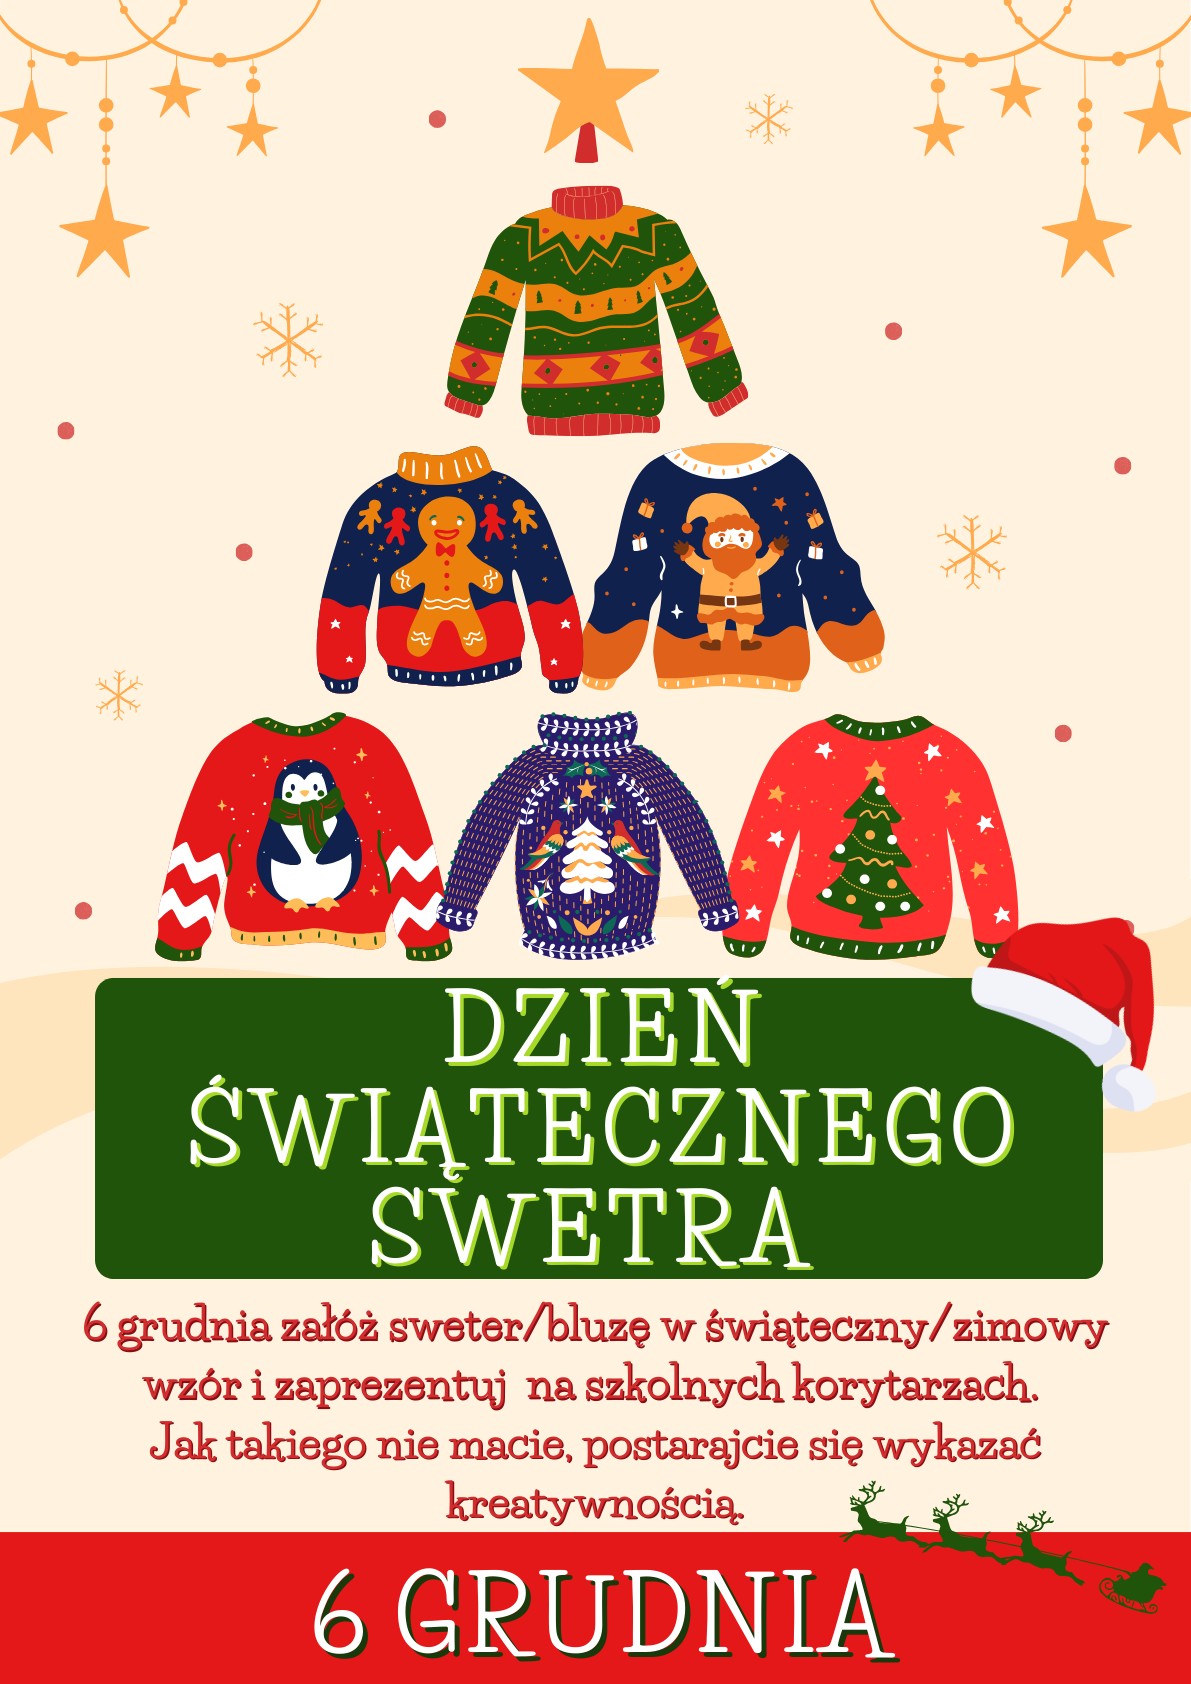 dzień świątecznego swetra 6 grudnia załóż sweter/bluzę w świąteczny/zimowy wzór i zaprezentuj na szkolnych korytarzach. Jak takiego nie macie, postarajcie się wykazać kreatywnością.